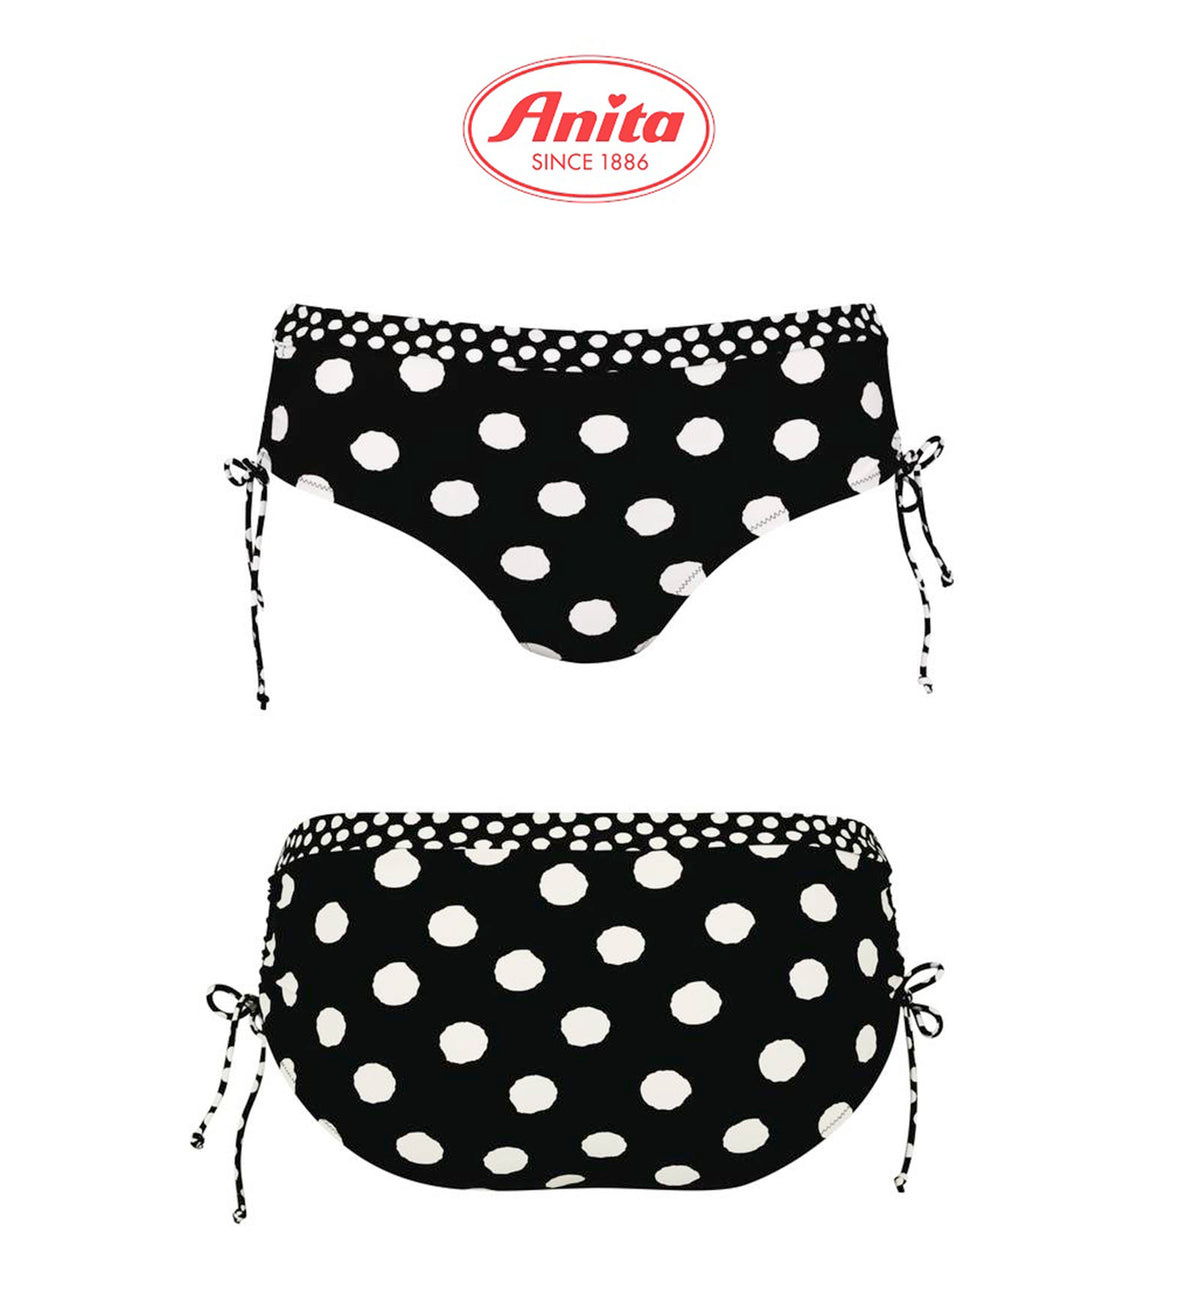 Anita Summer Dot Ebru Adjustable Side Hipster Swim Bottom (8810-0),Small,Black/White - Black/White,Small